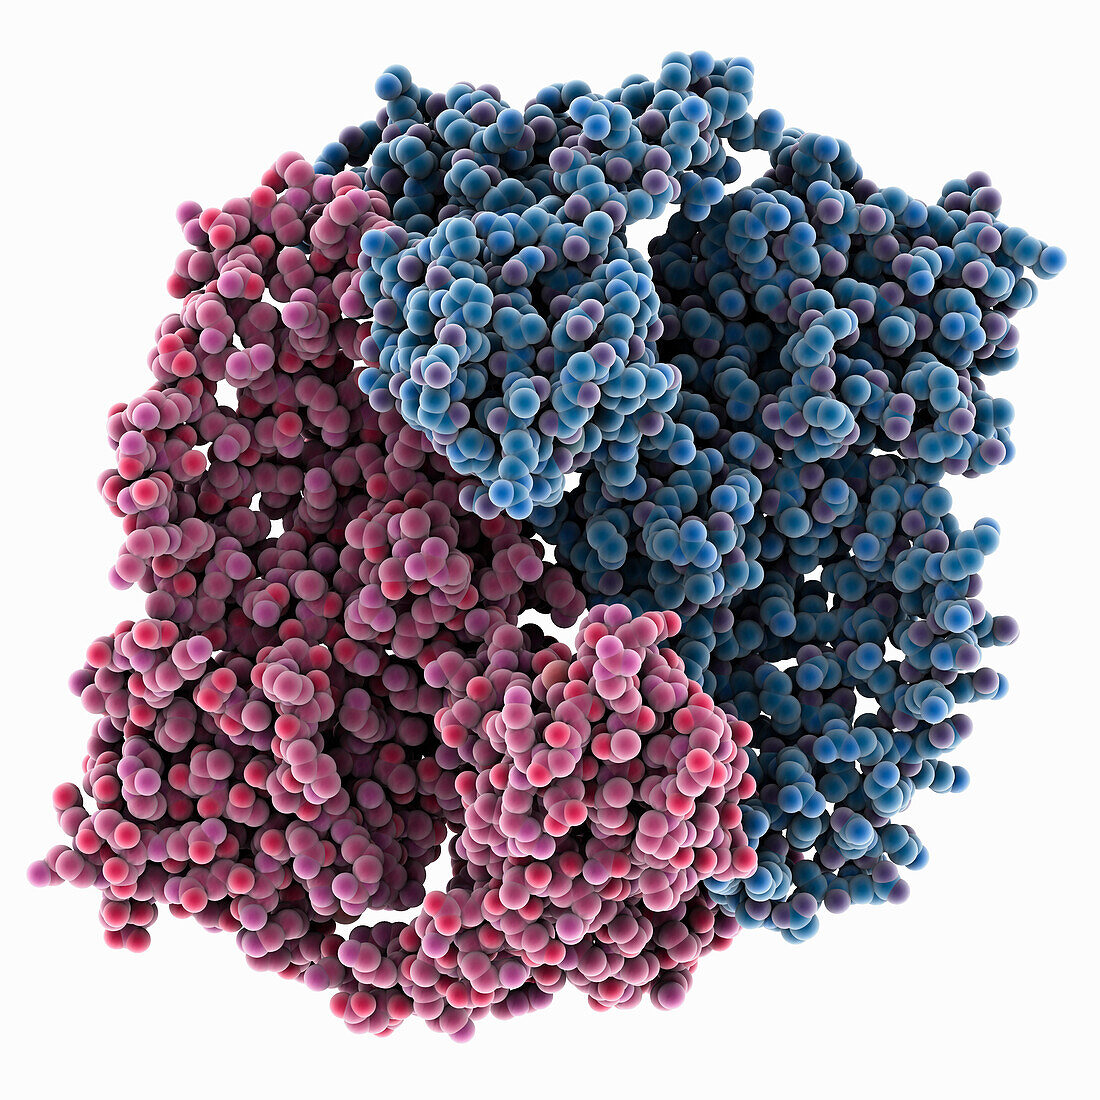 DNA topoisomerase, molecular model